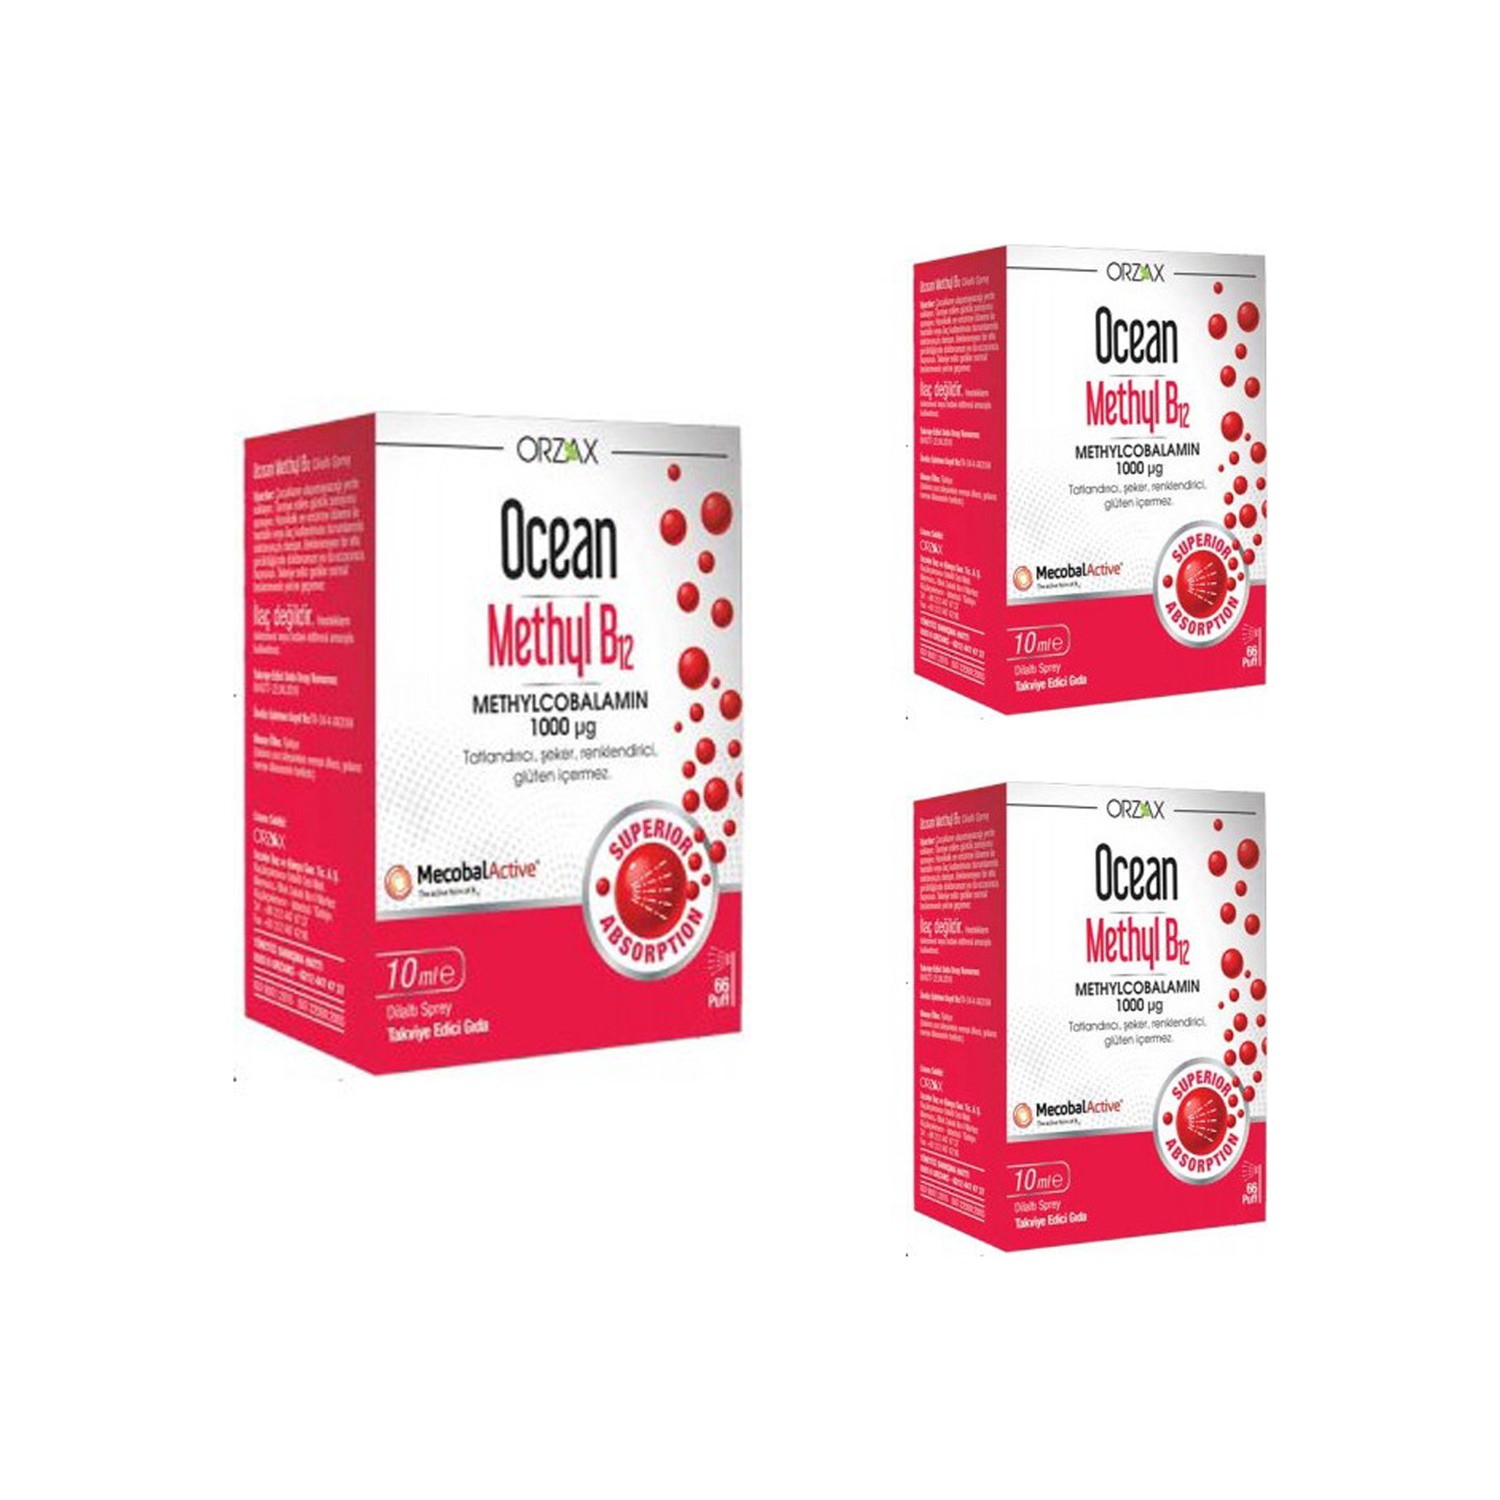 спрей orzax ocean methyl b12 1000 мкг 5 упаковок по 10 мл Спрей Orzax Ocean Methyl B12 1000 мкг, 3 упаковки по 10 мл